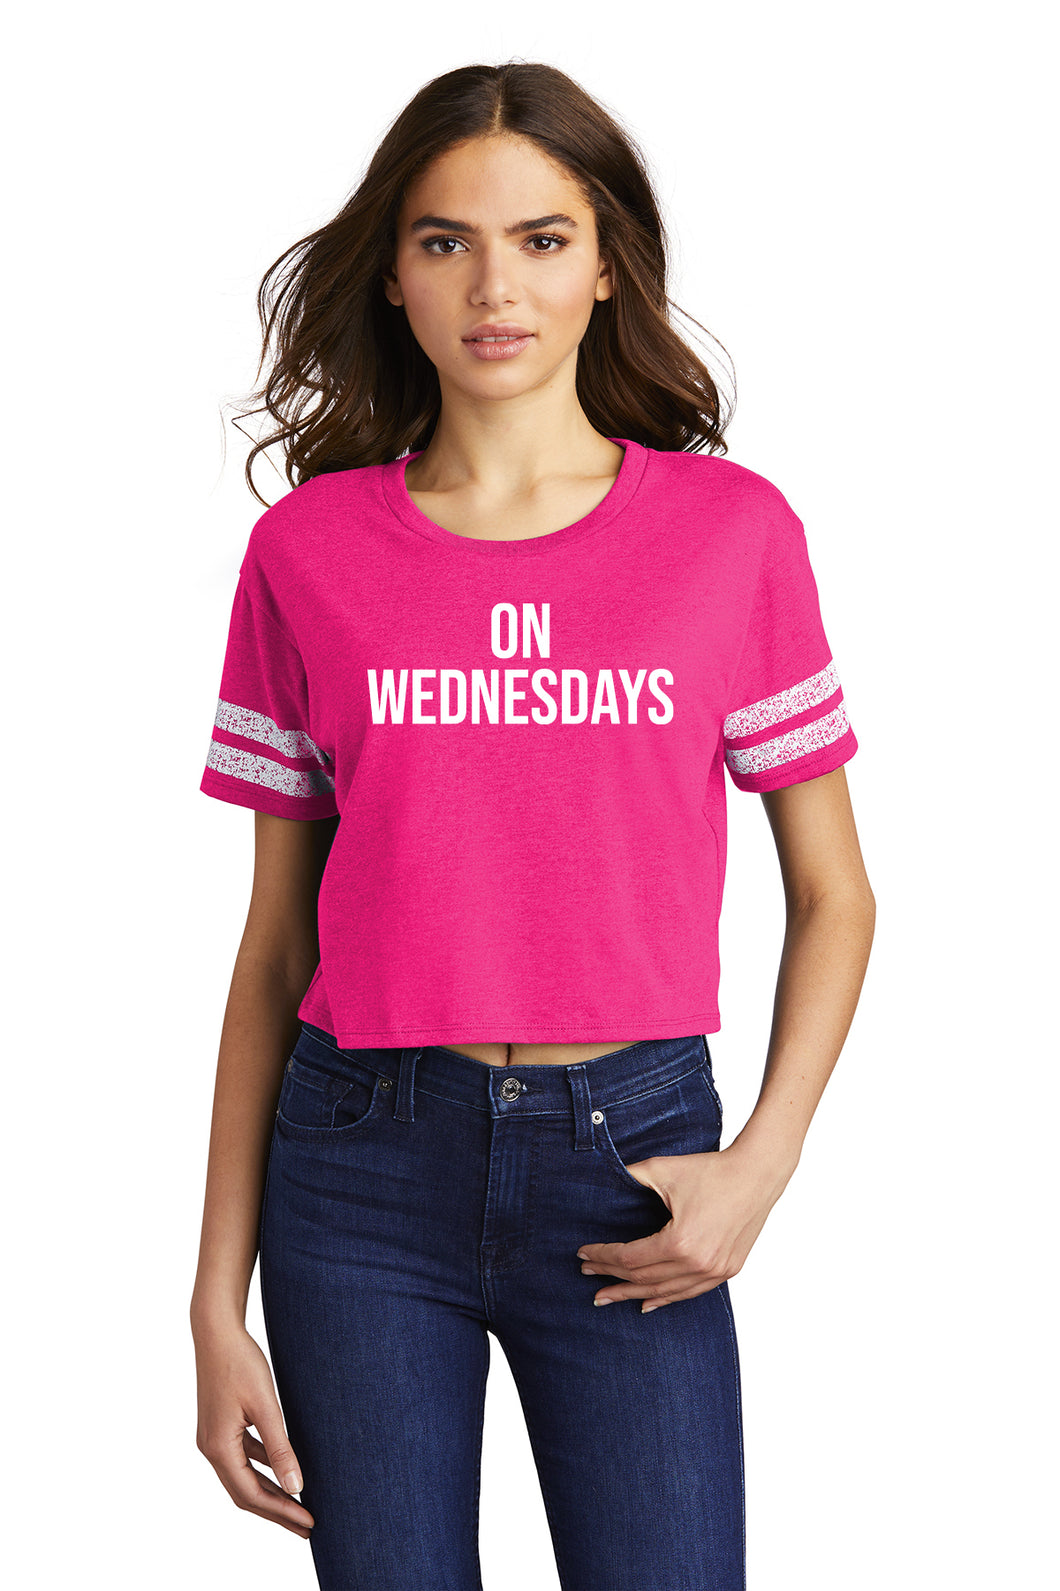 On Wednesdays - Pink